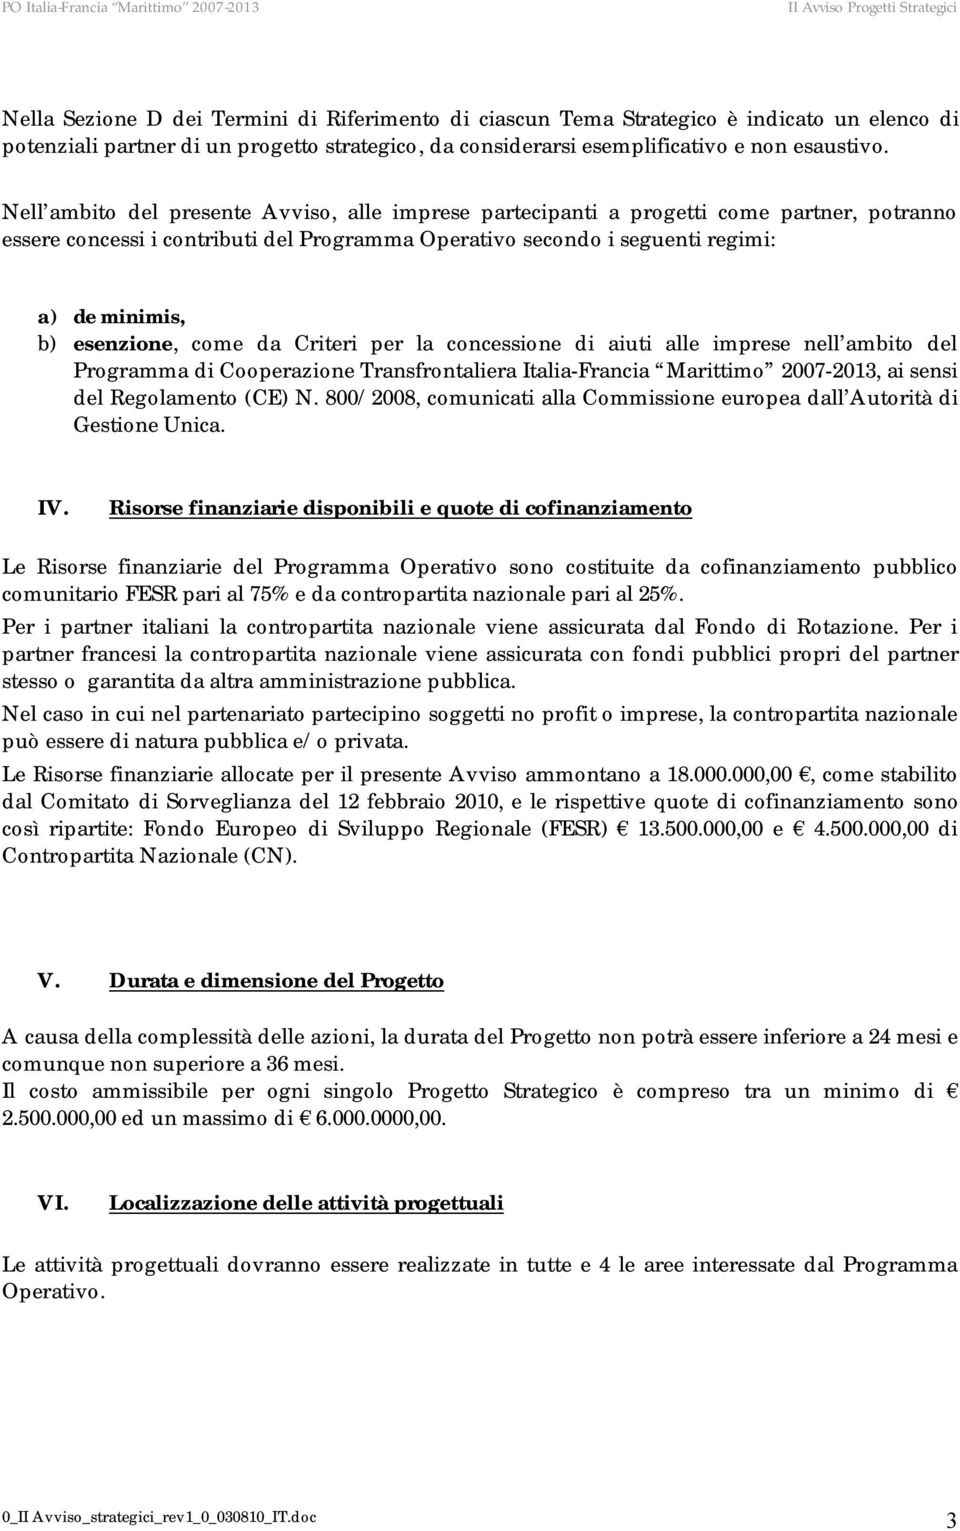 esenzione, come da Criteri per la concessione di aiuti alle imprese nell ambito del Programma di Cooperazione Transfrontaliera Italia-Francia Marittimo 2007-2013, ai sensi del Regolamento (CE) N.